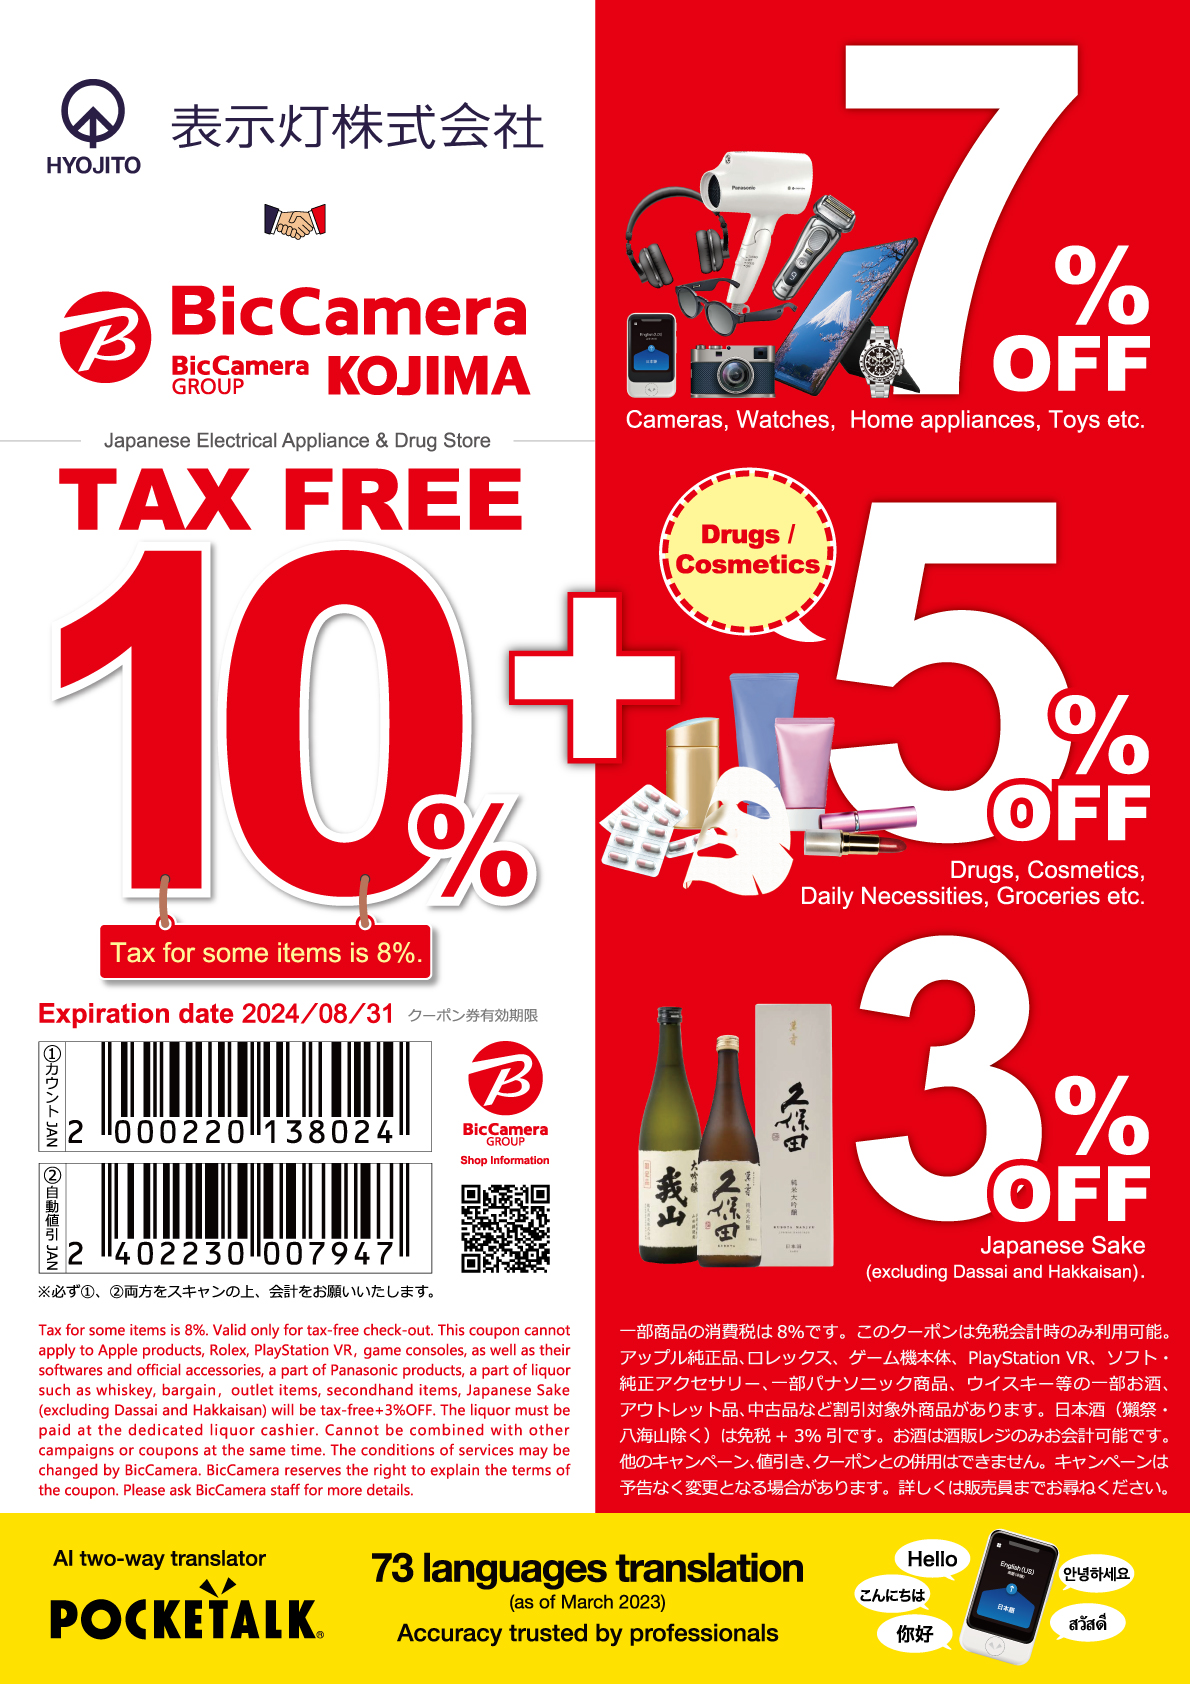 bic-camera-taxfreeshops-jp